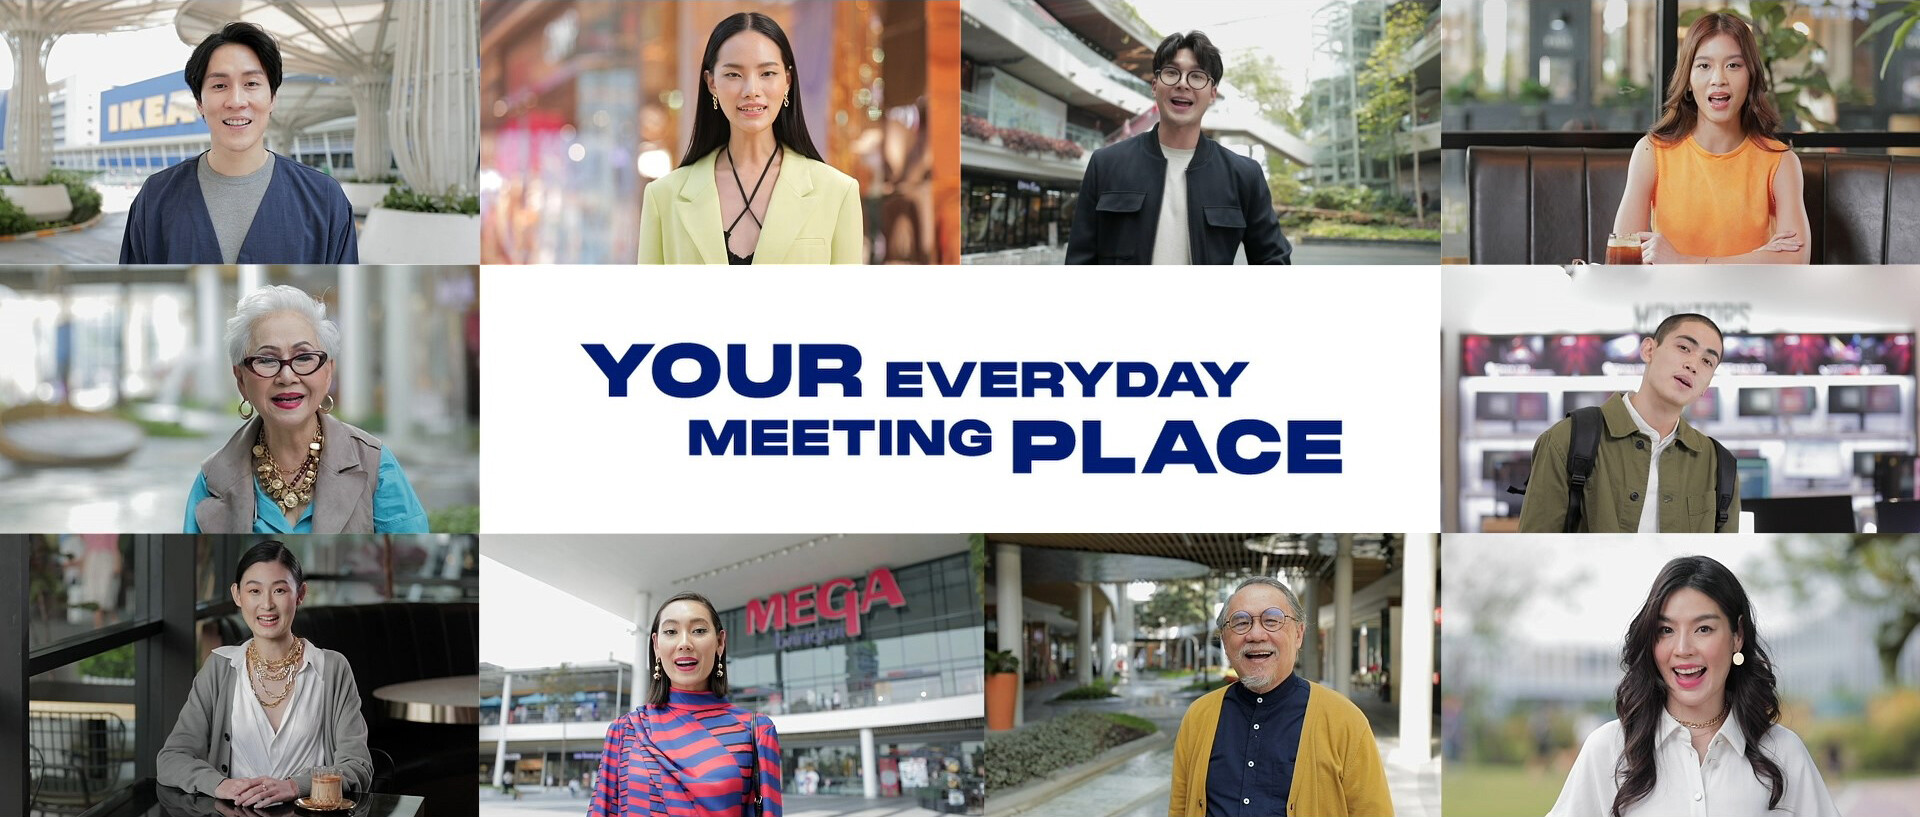 เมกาบางนา ฉลองครบรอบ 10 ปี จัดทำคลิปโฆษณา "Megabangna - Your Everyday Meeting Place"  สะท้อนภาพลักษณ์ความเป็นที่สุดของ Meeting Place ที่ครองใจคนย่านกรุงเทพฯตะวันออก